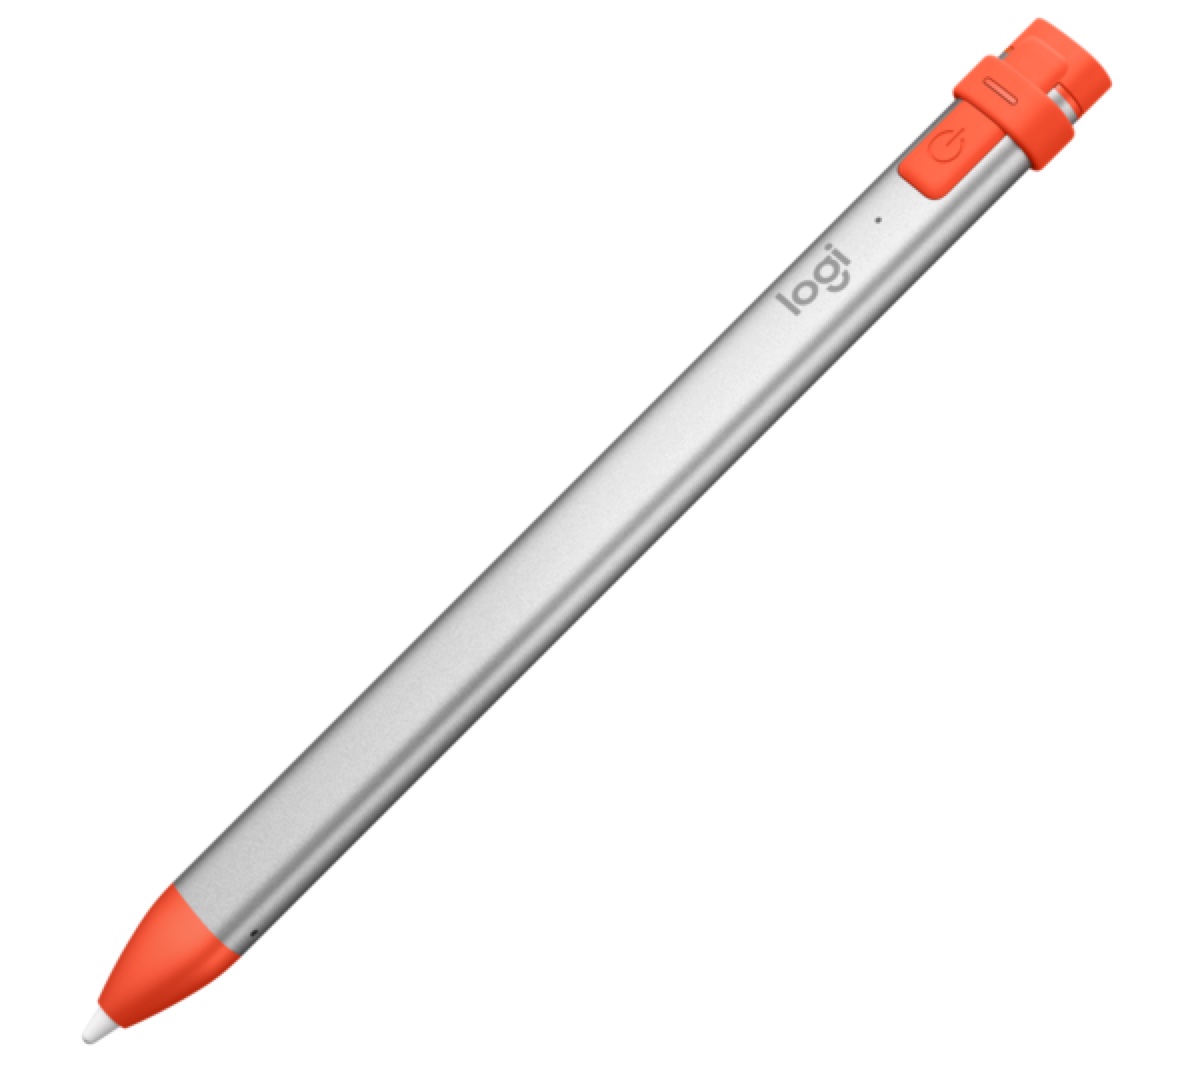 Logitech Crayon, l’alternativa ad Apple Pencil arriva per tutti anche in Italia